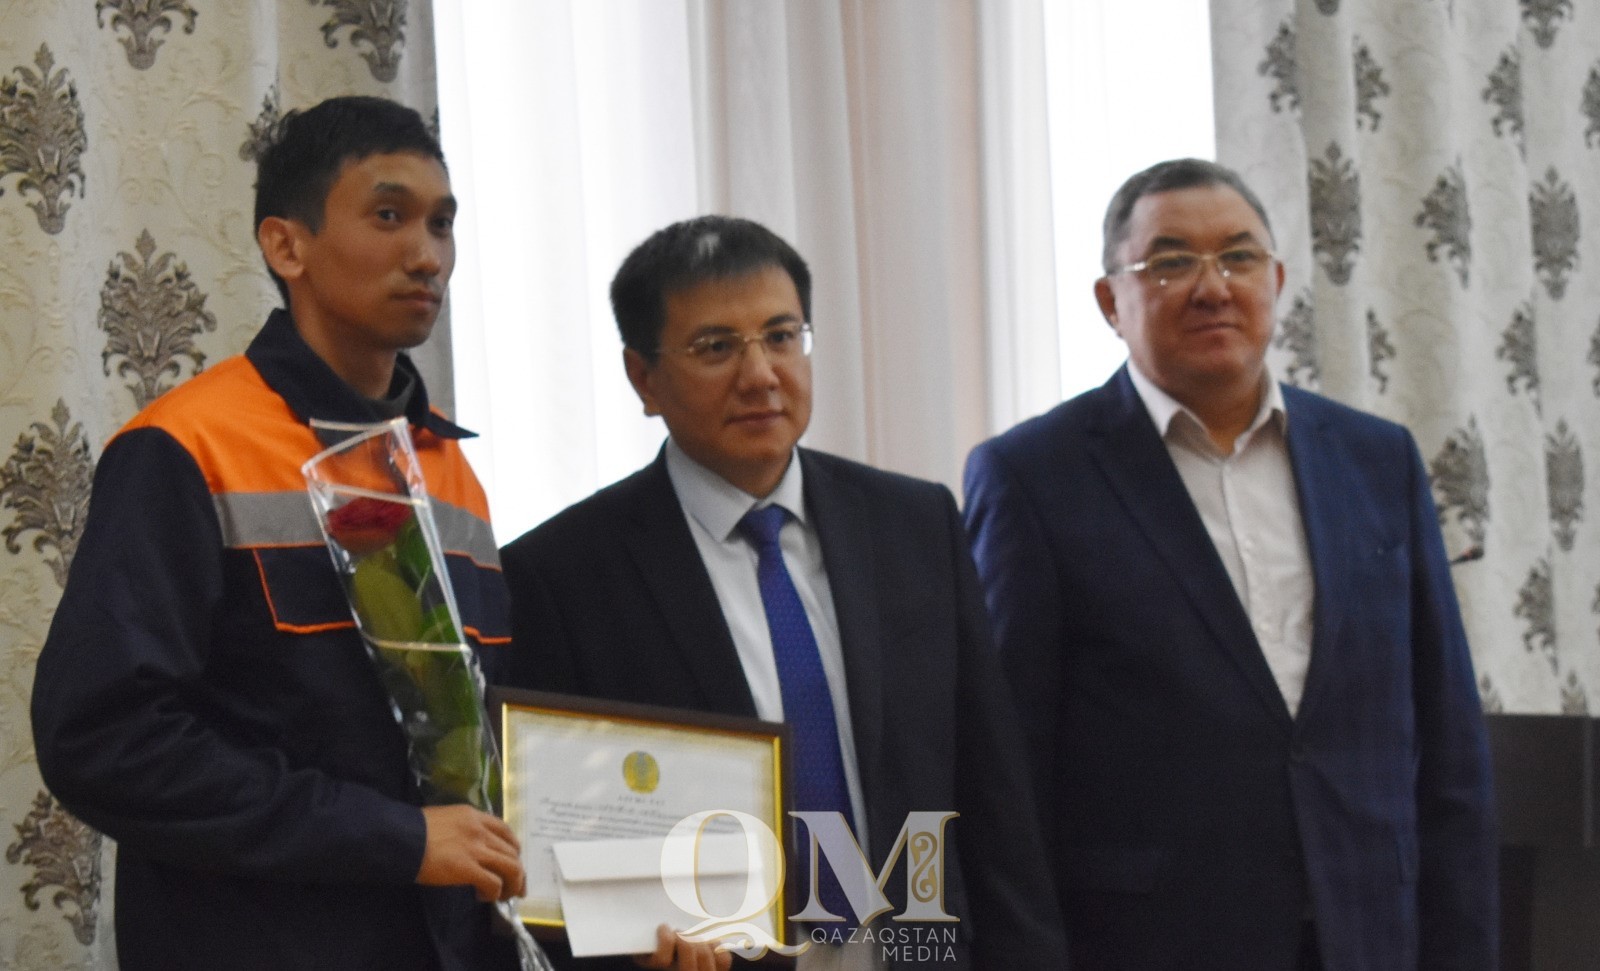 СКО на конкурсе «Еңбек жолы-2023» представит заводчанин